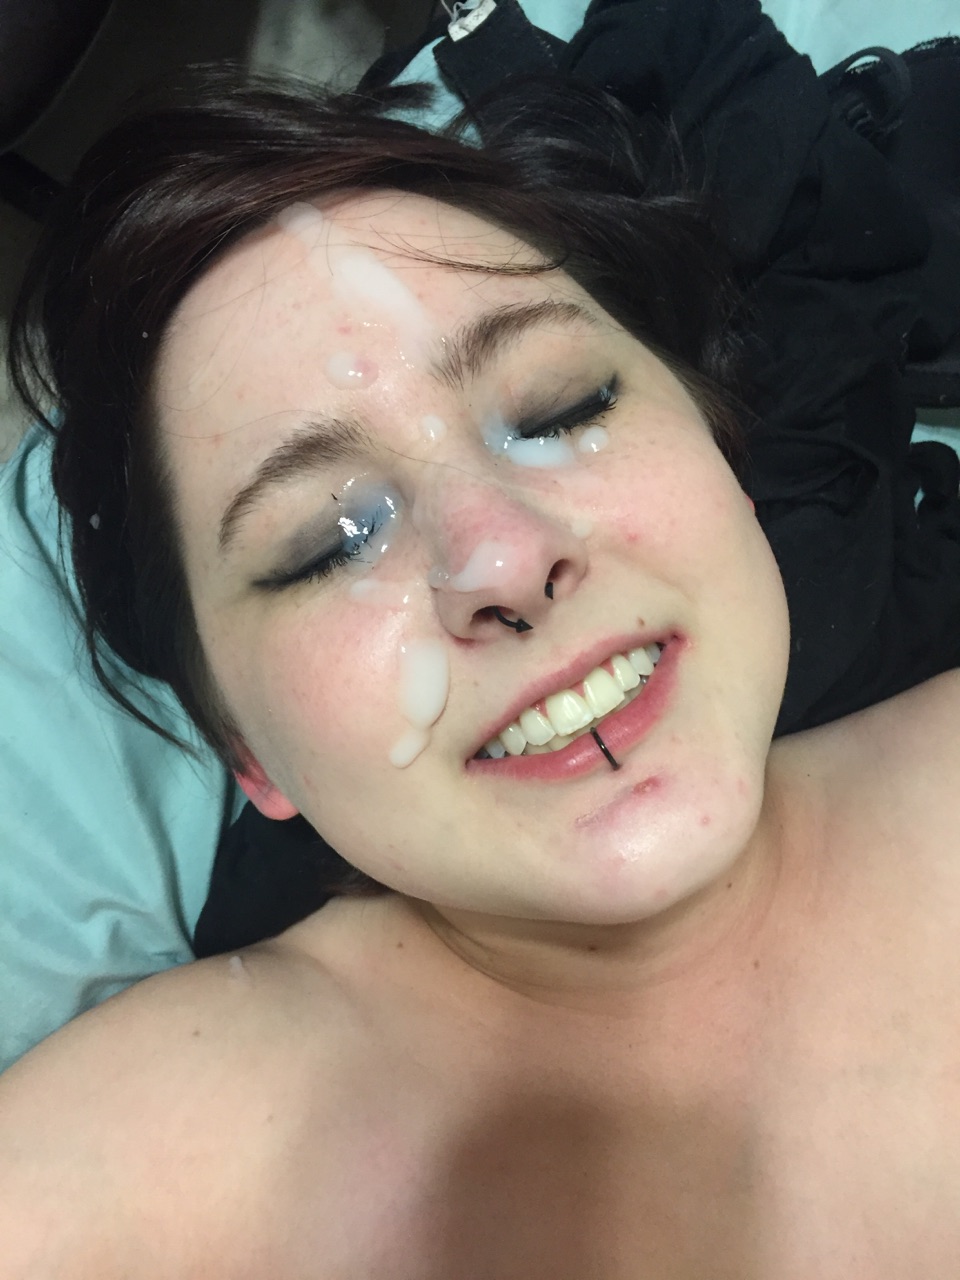 Goth girl get facial Foto Porno - EPORNER